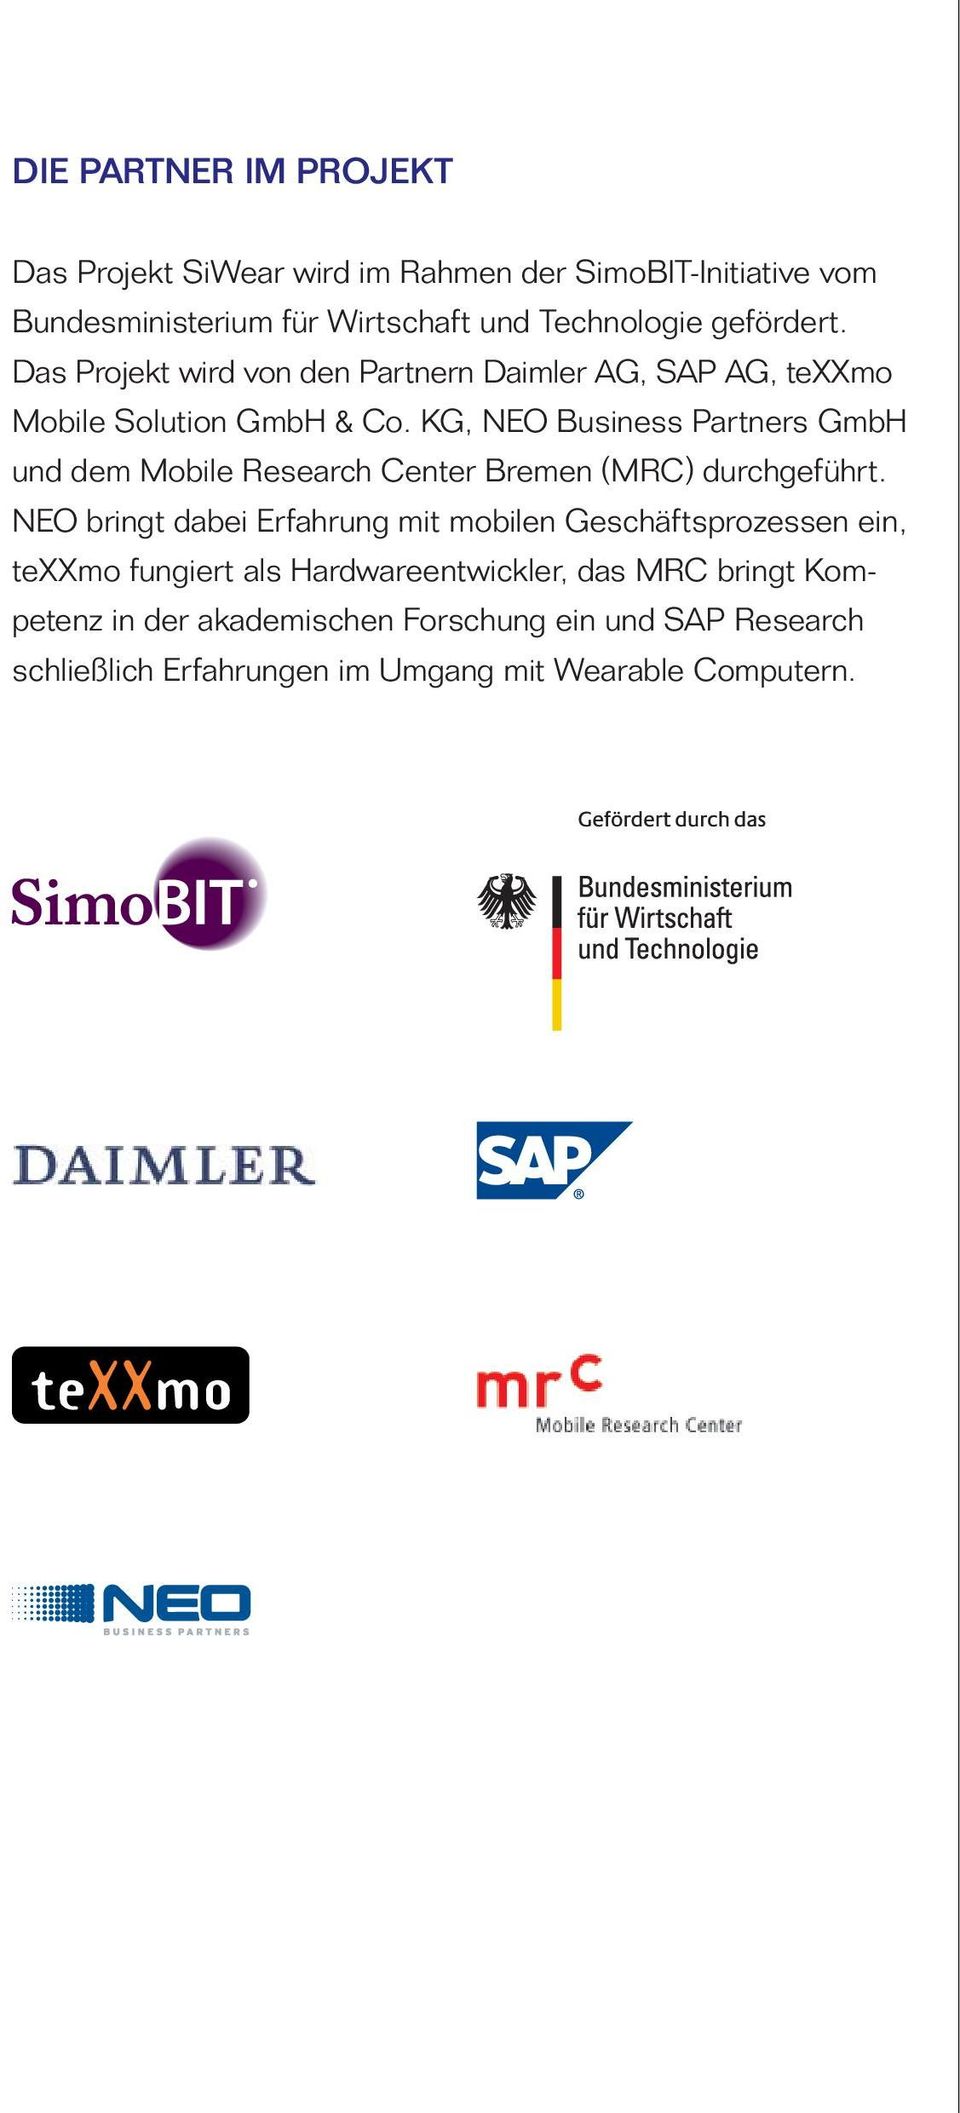 KG, NEO Business Partners GmbH und dem Mobile Research Center Bremen (MRC) durchgeführt.